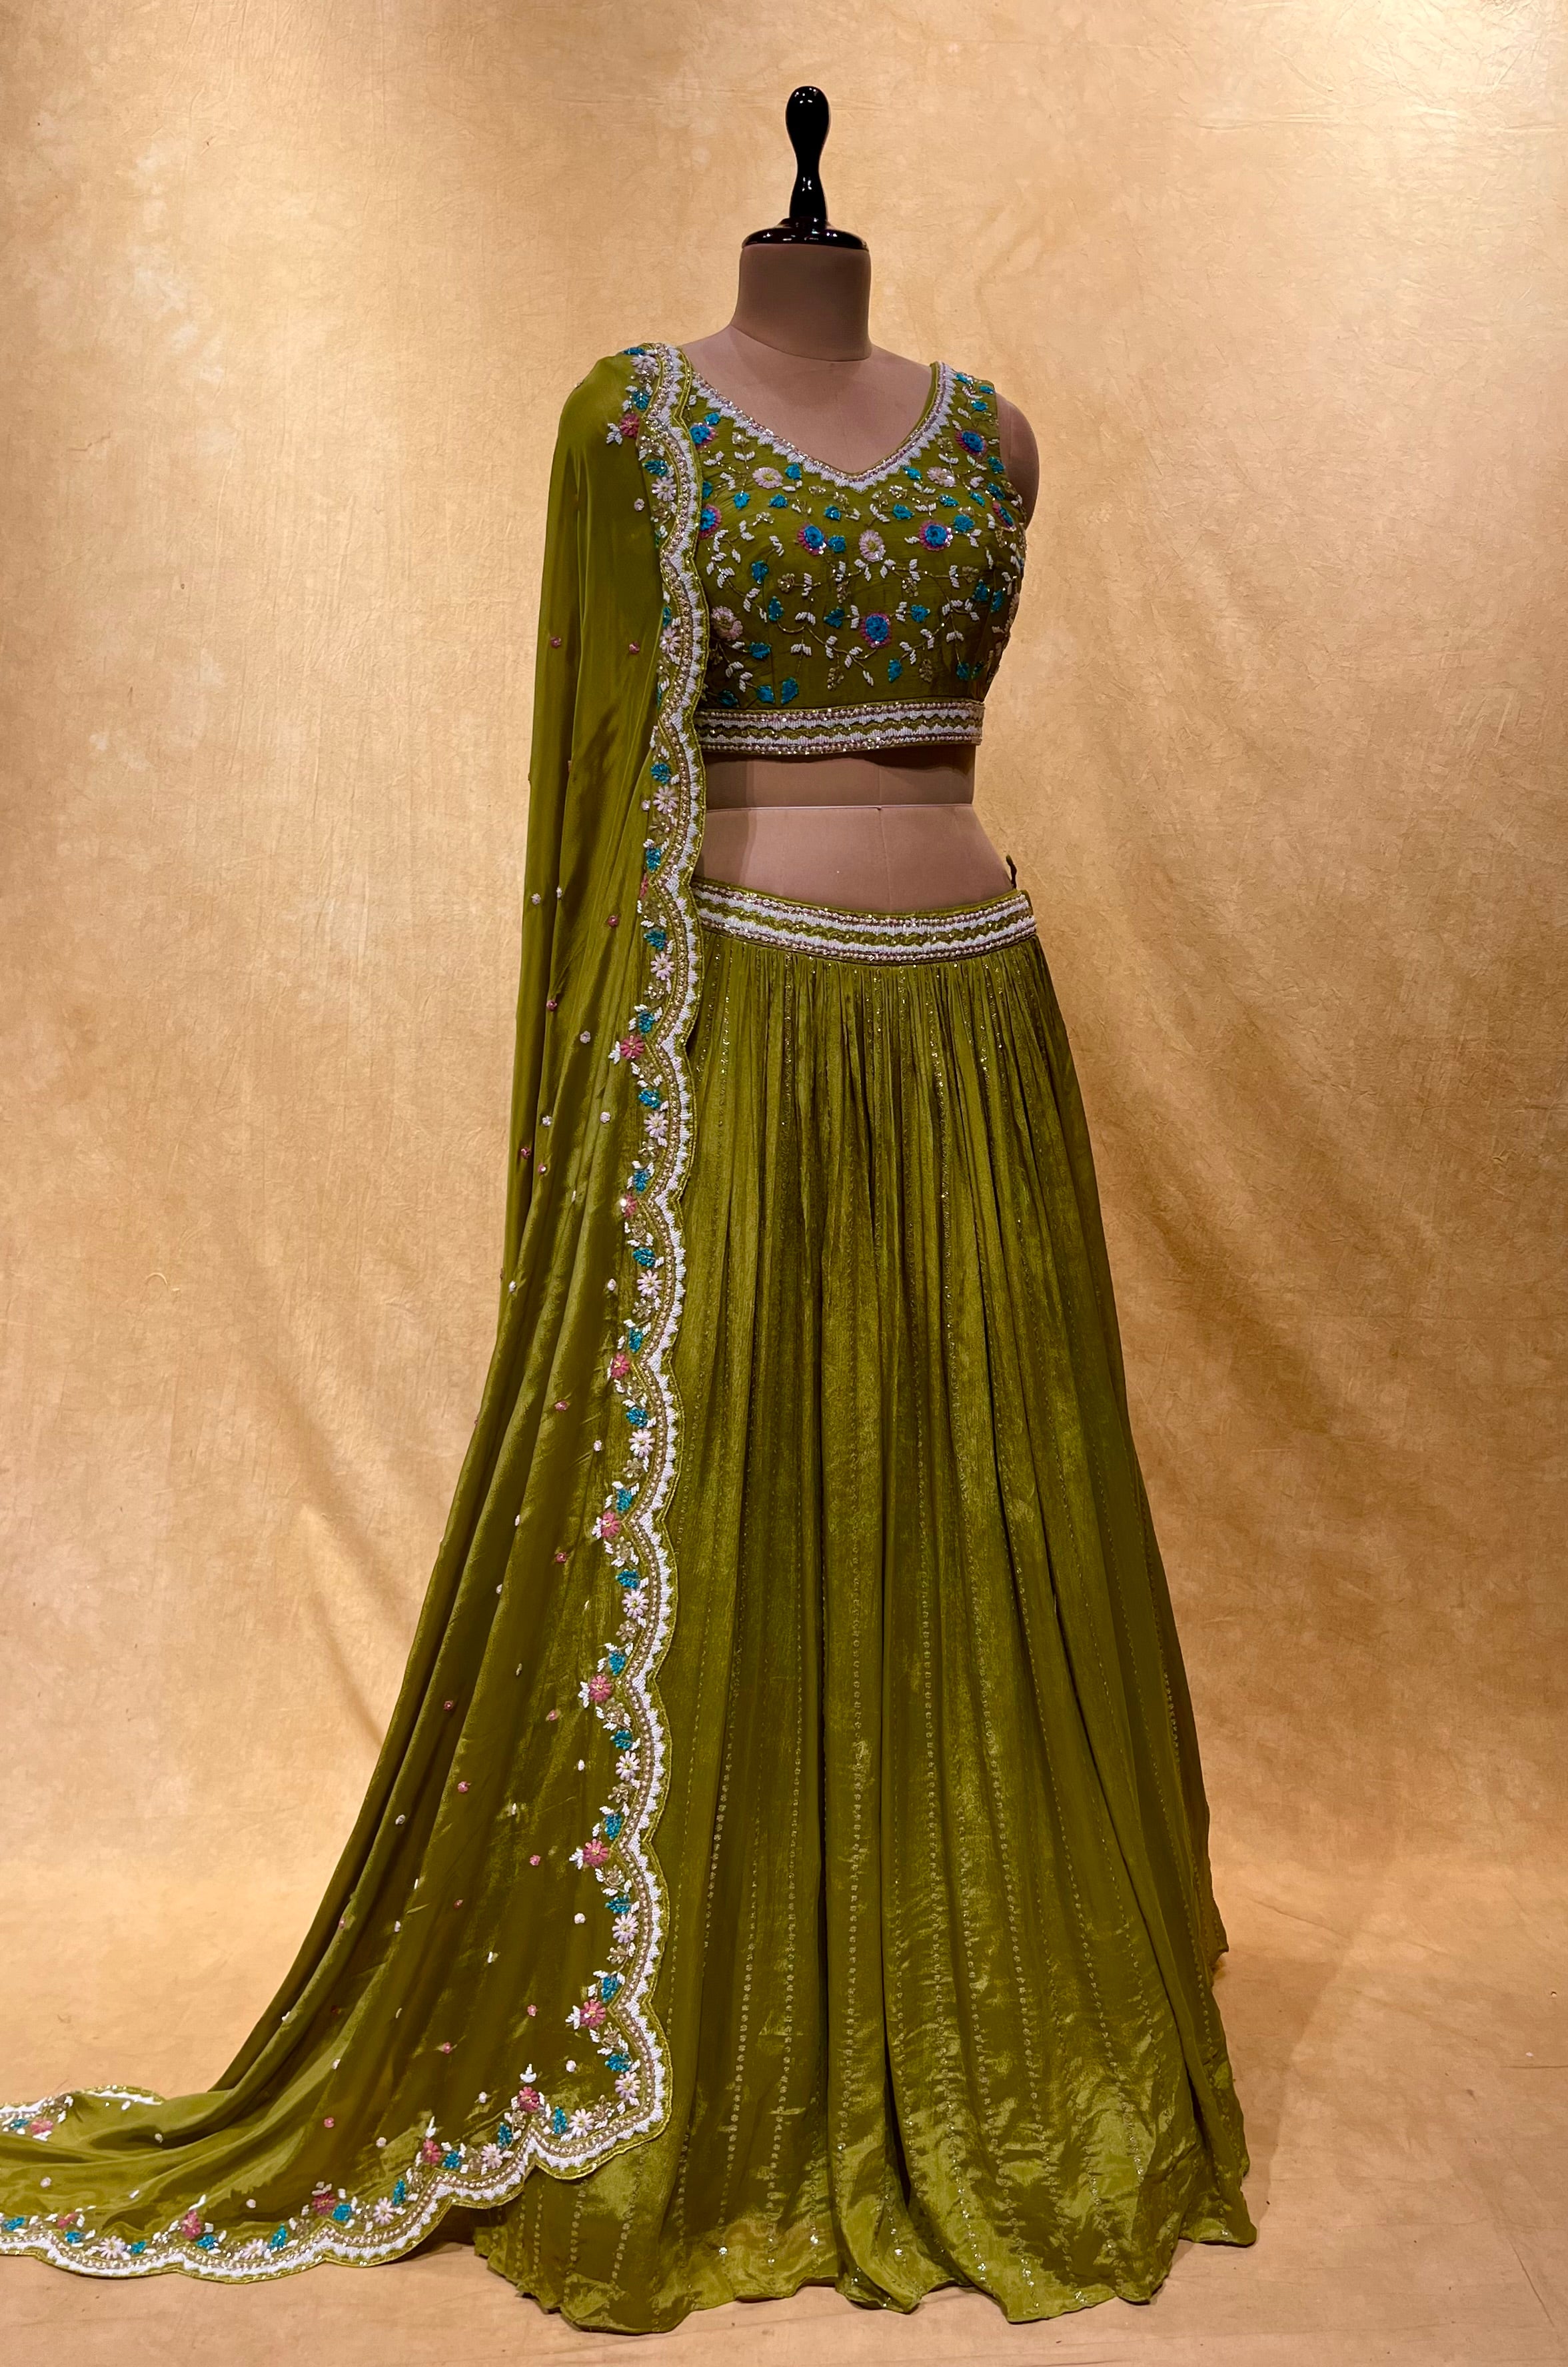 Aawiya 1008 Latest Designs Mehndi Function Lehenga Wedding Wear Collection